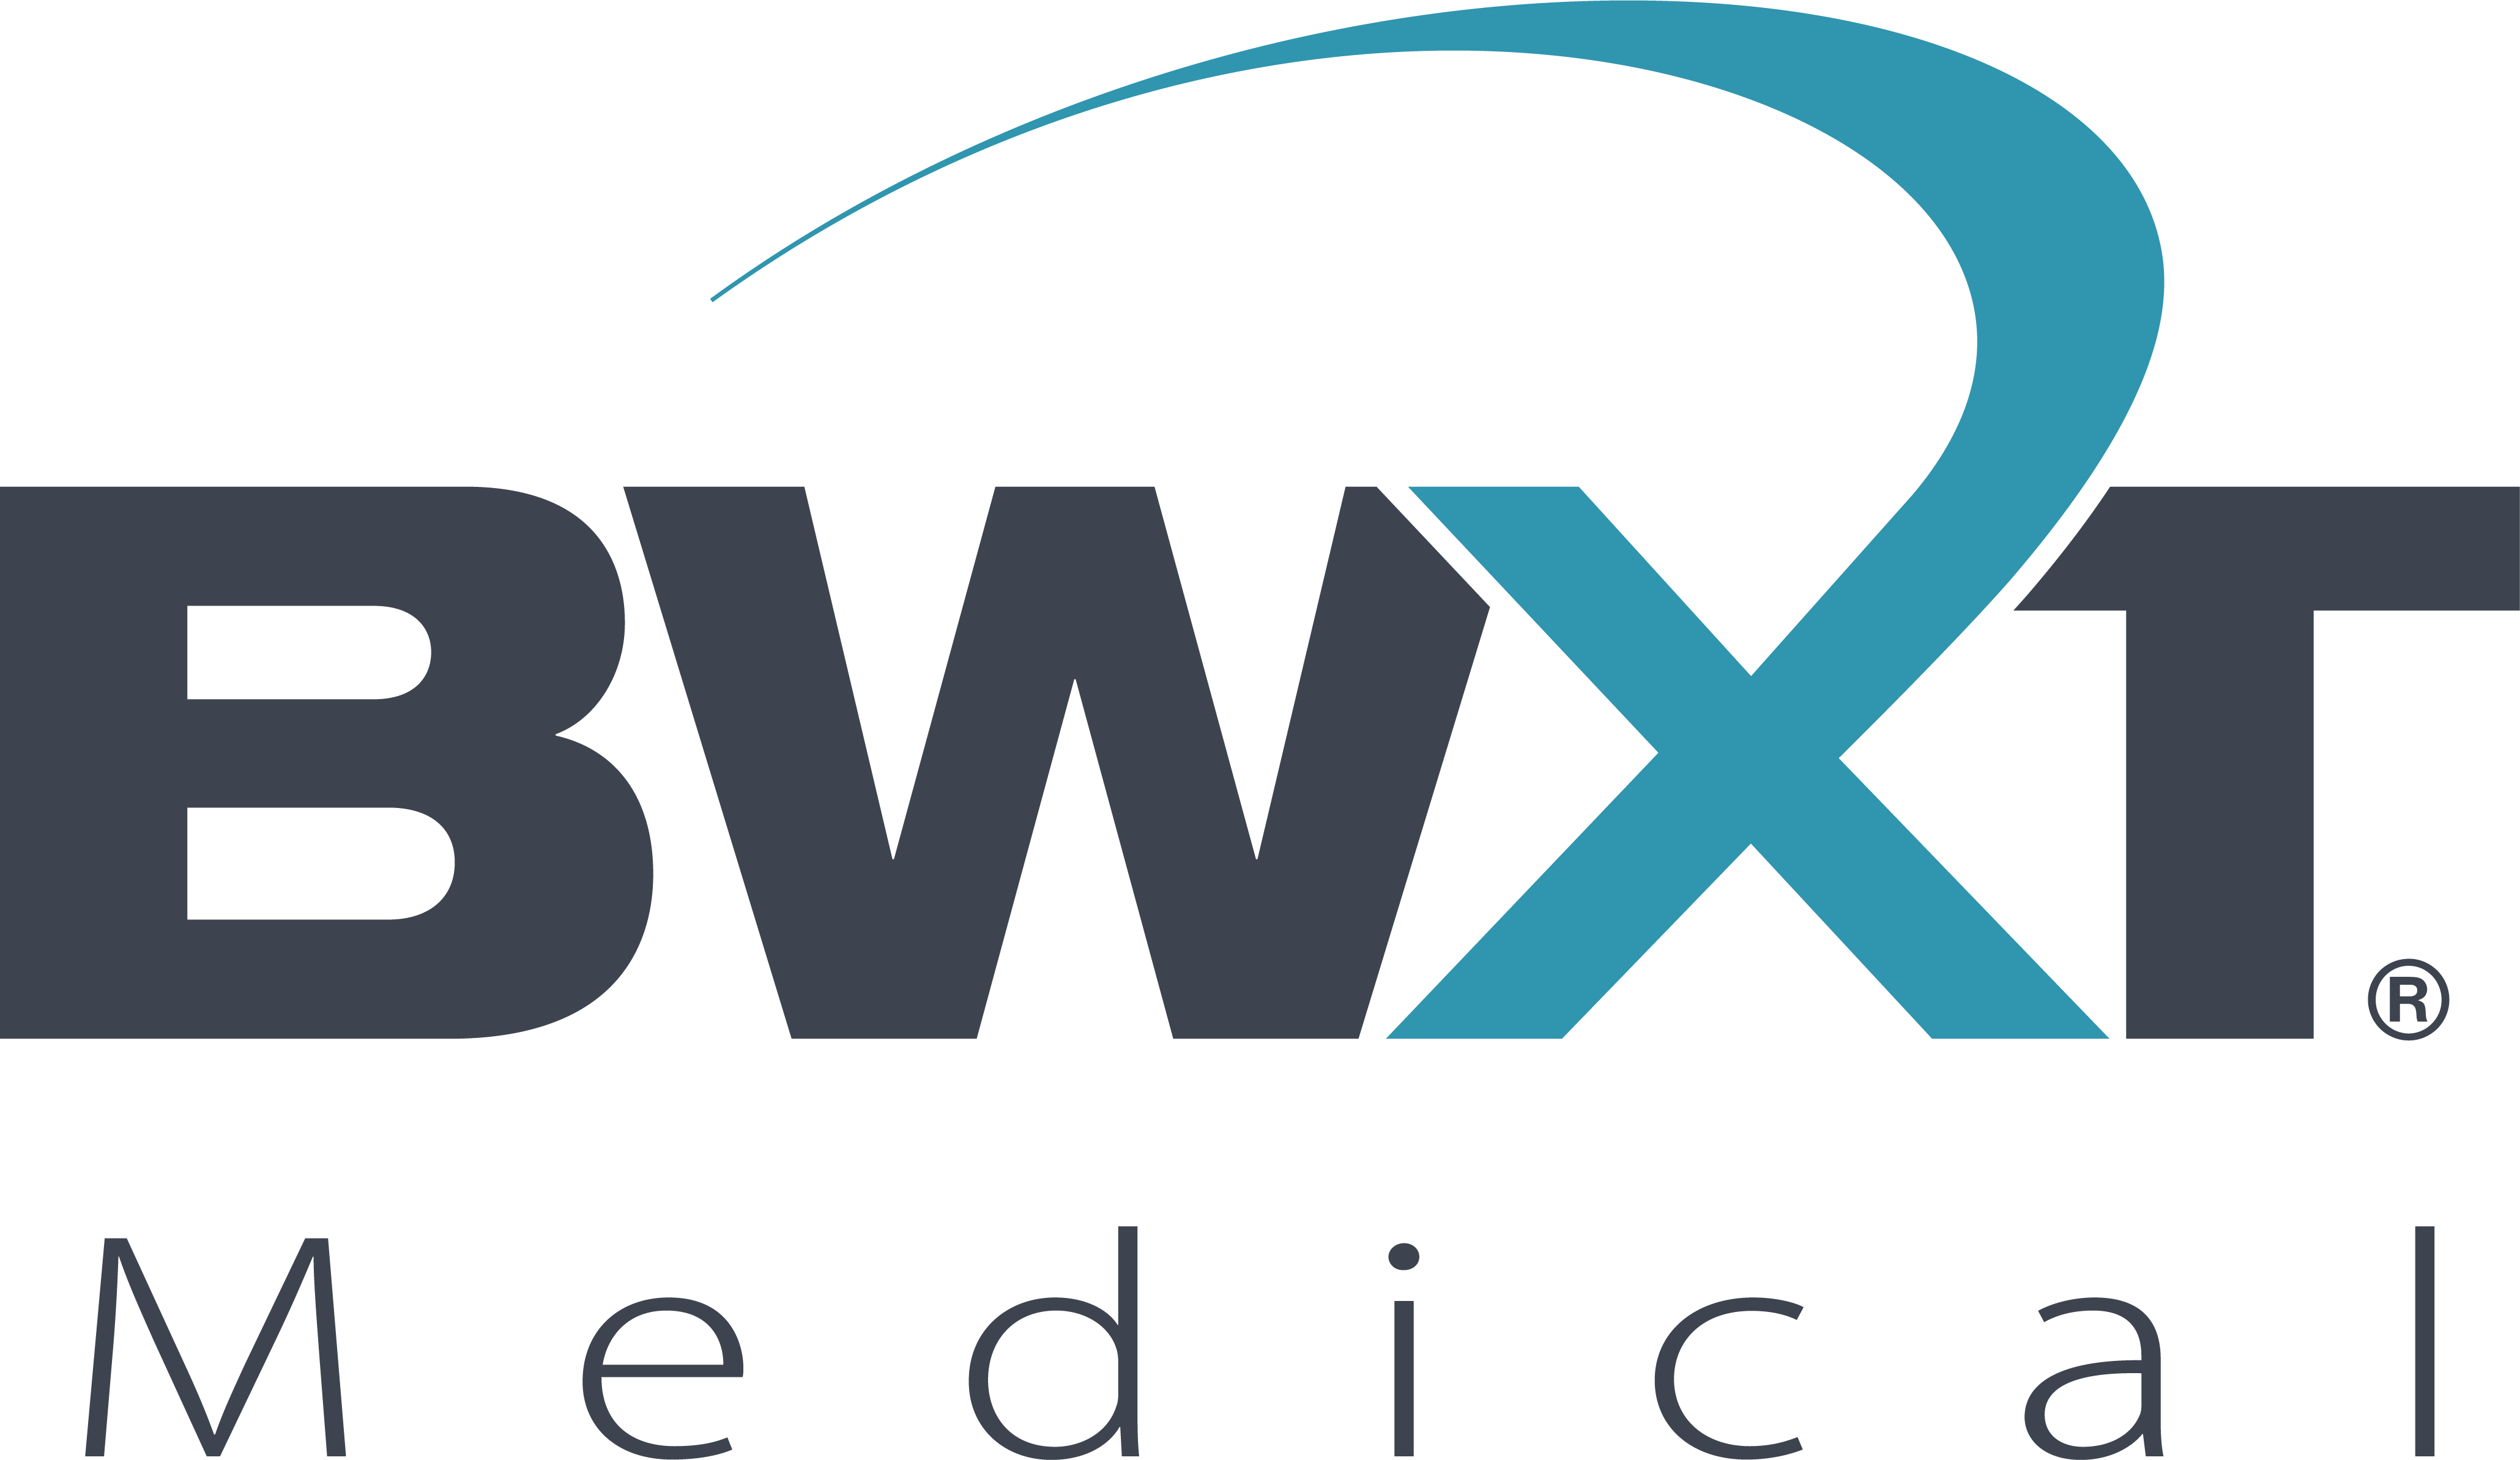 BWXT Medical